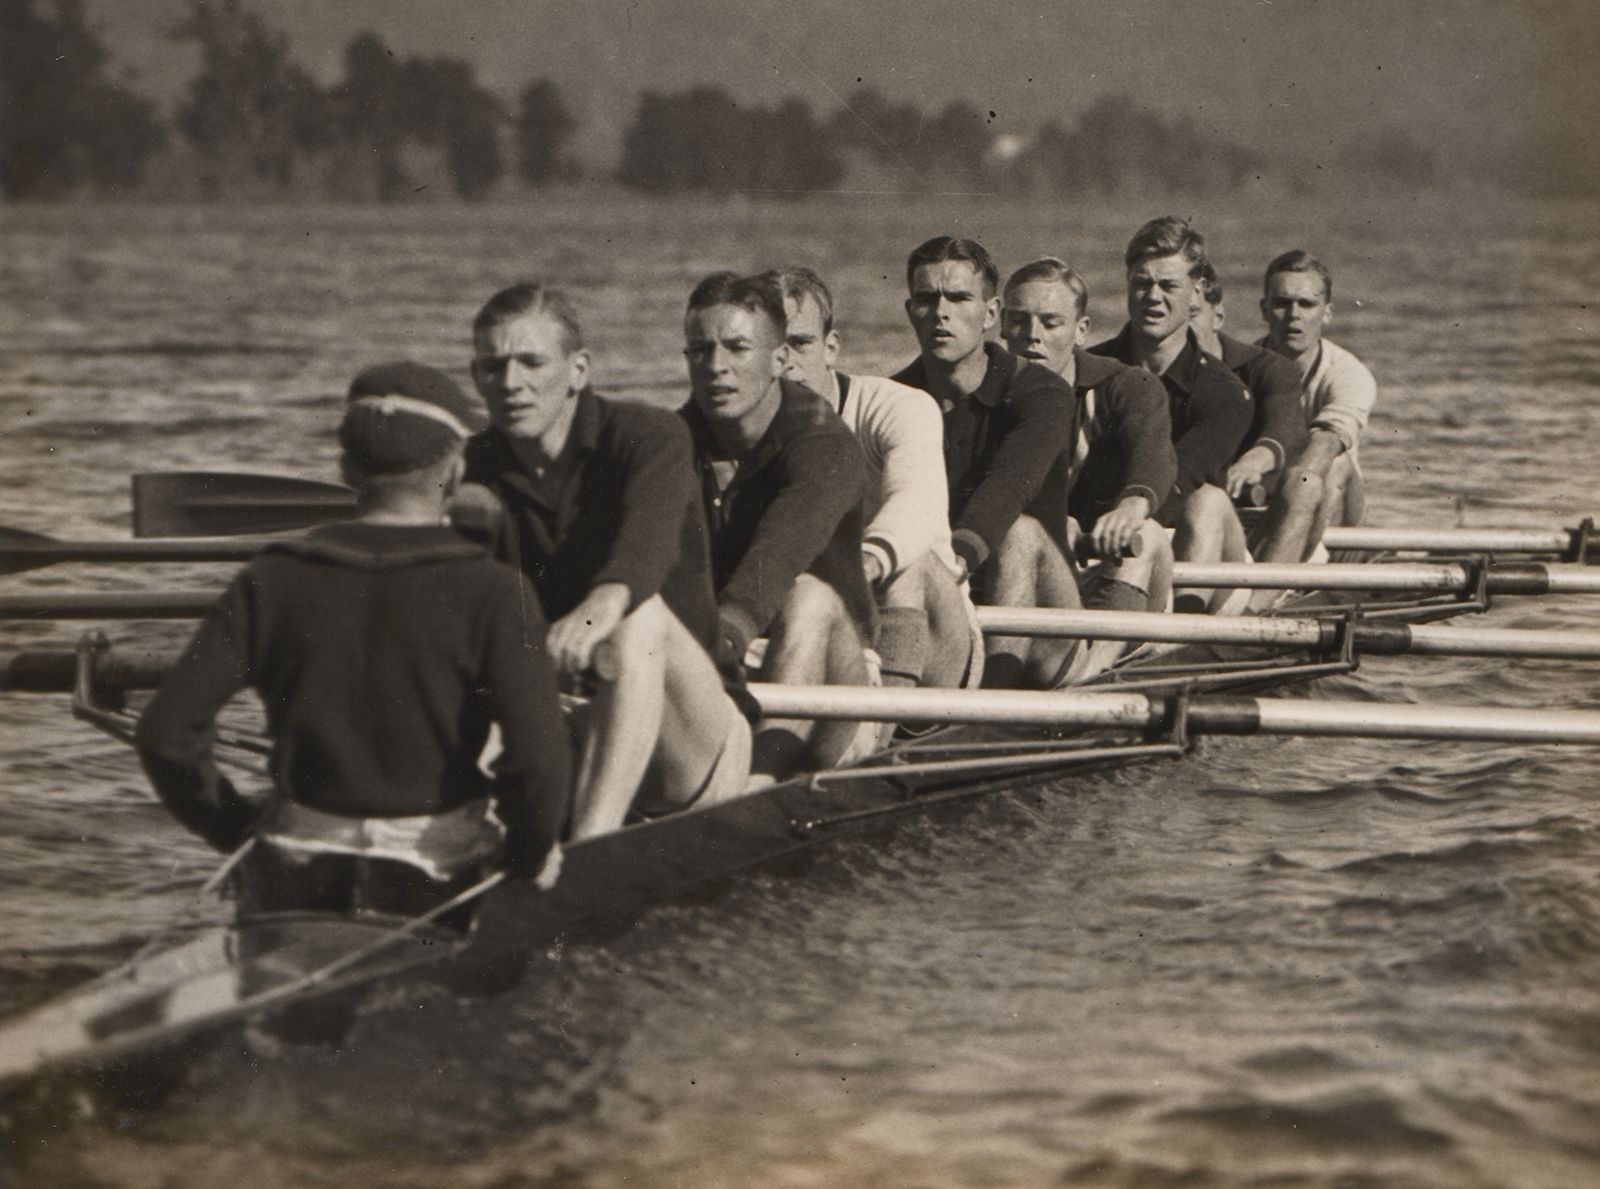 Trinity College rowing crew, Penrith, 1933